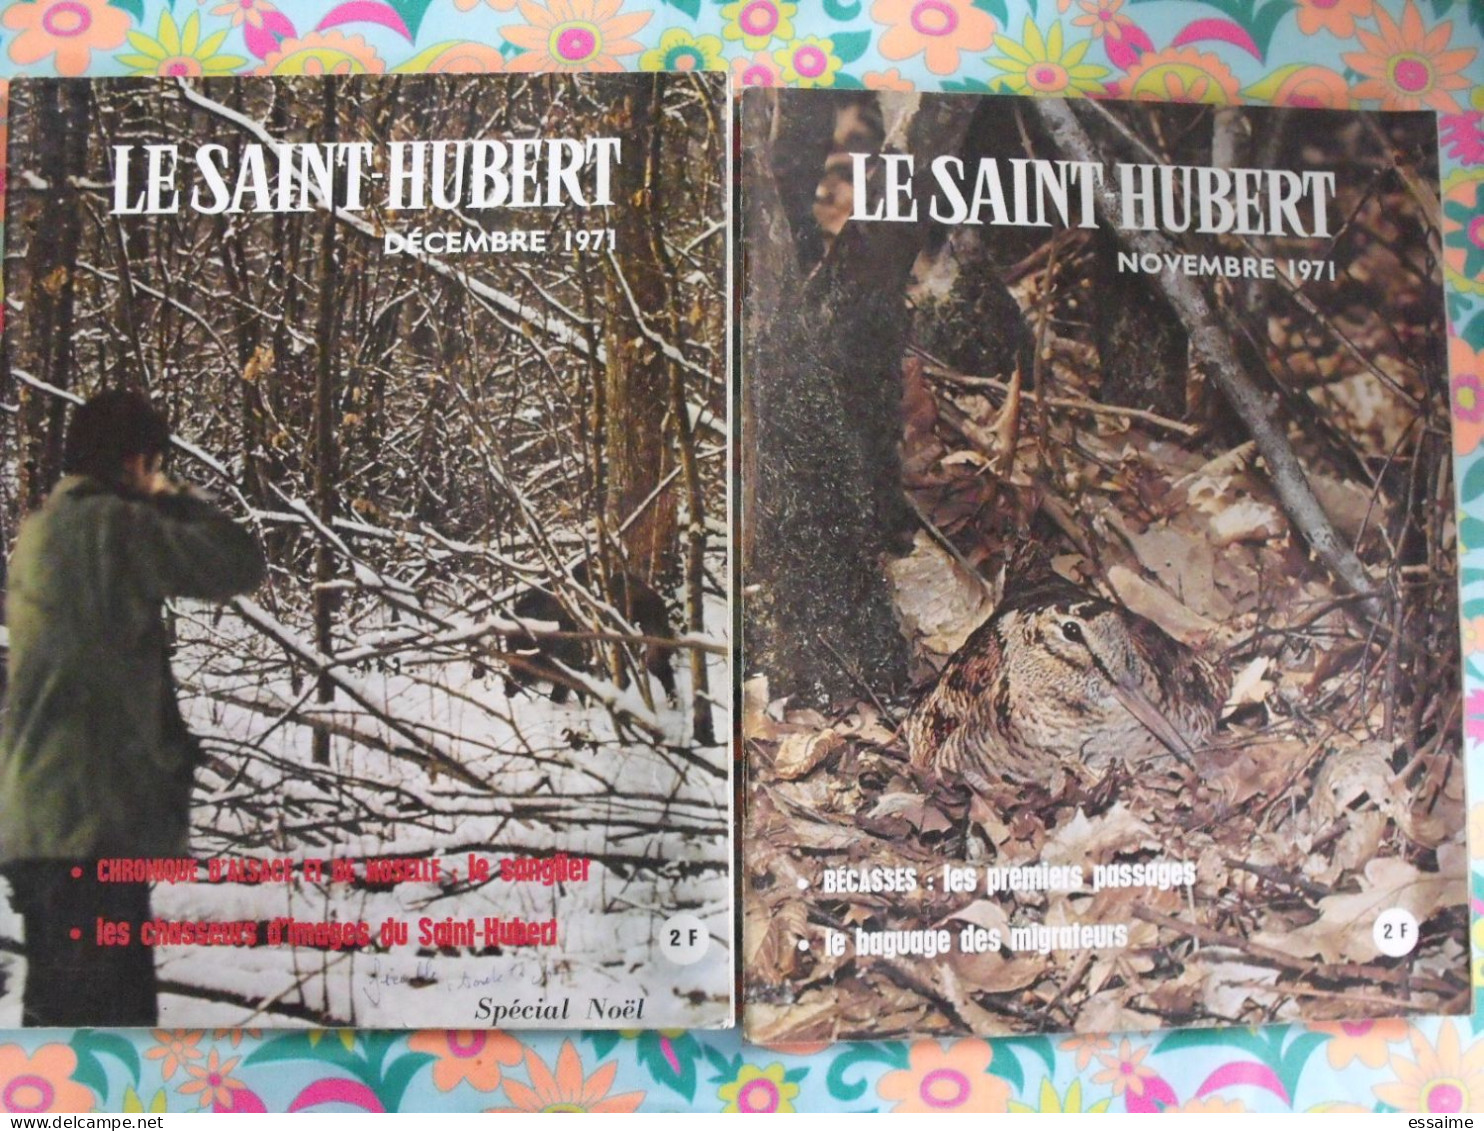 lot de 12 revues Le Saint Hubert de 1971. mensuel. chasse, pêche. année complète.